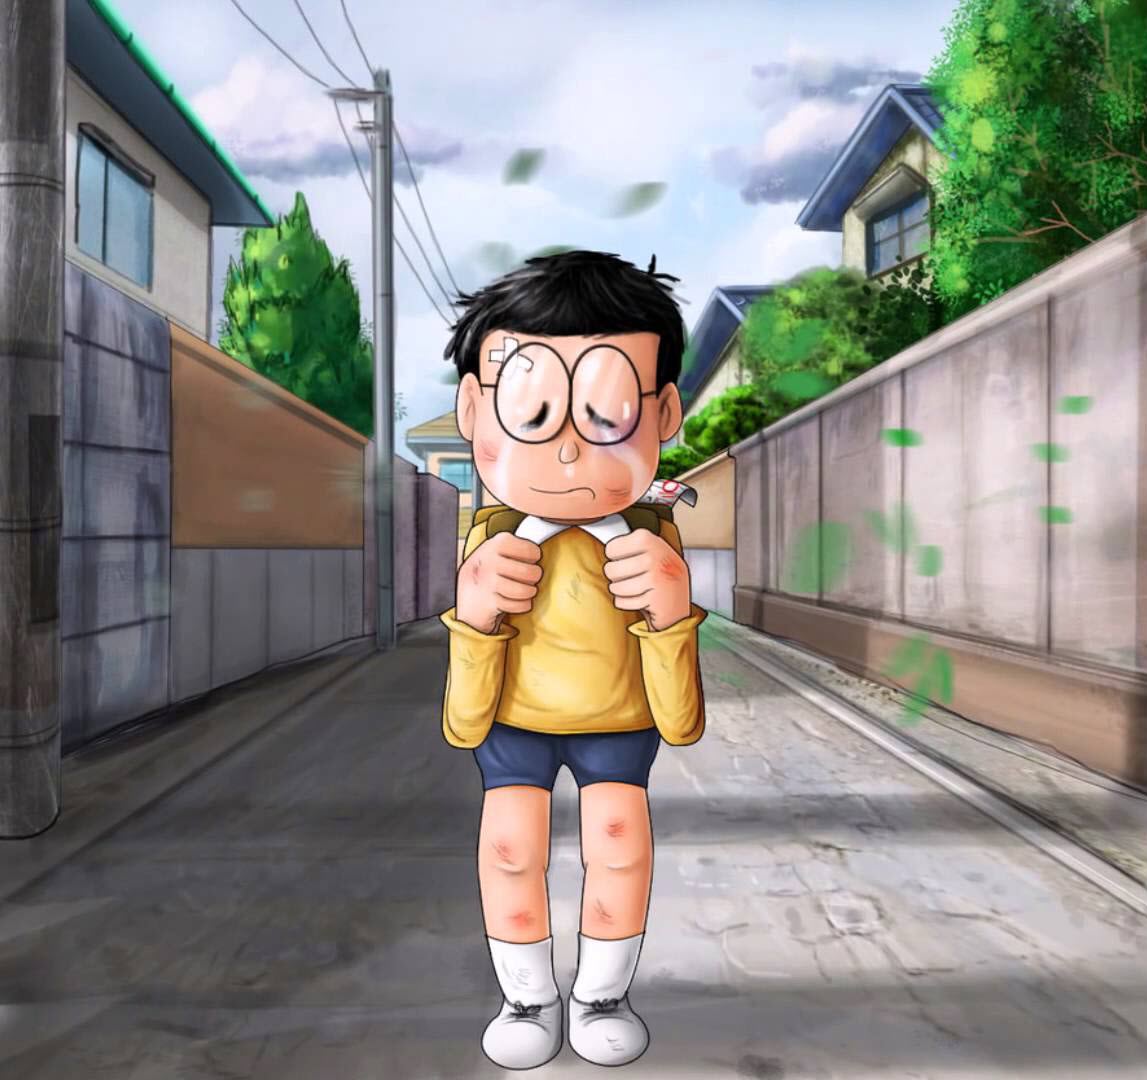 Ảnh Nobita Đẹp Ấn Tượng Sắc Nét Nhất Trong Doremon